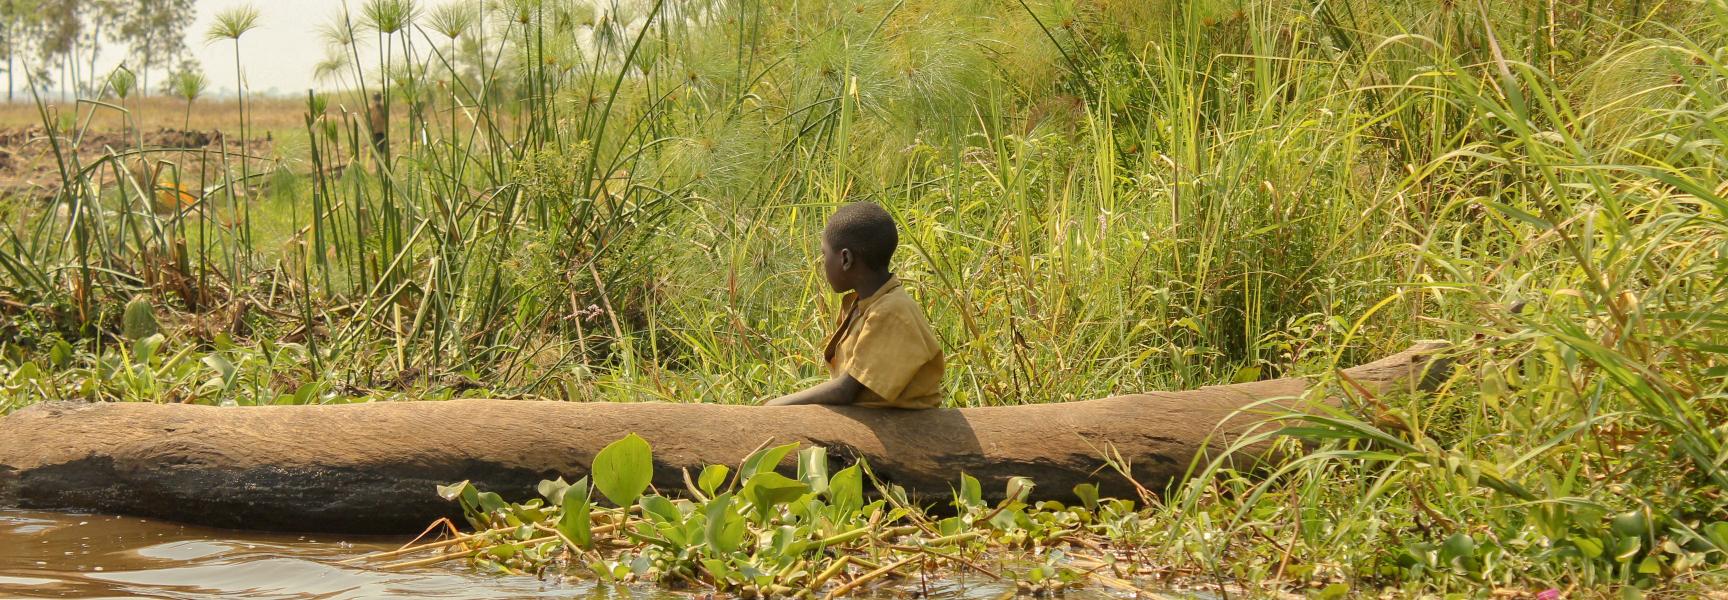 Un enfant sur une barque au bord d'une rivière au Rwanda